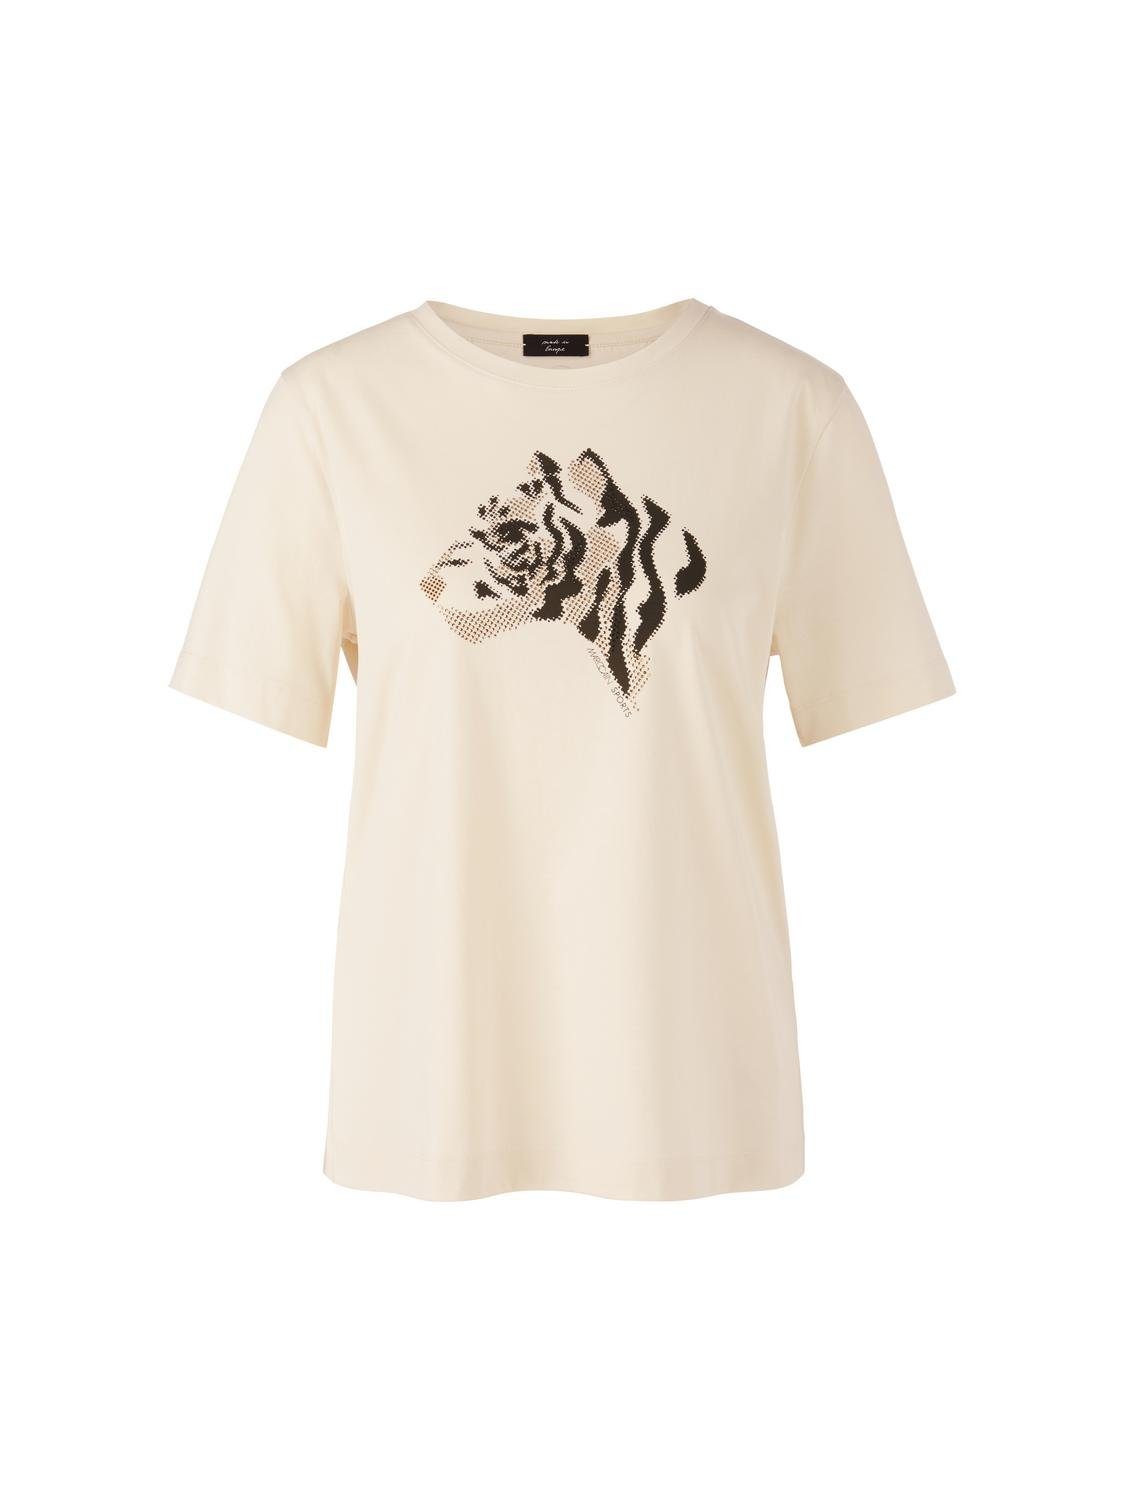 Marc Cain T-Shirt T-Shirt, almond milk